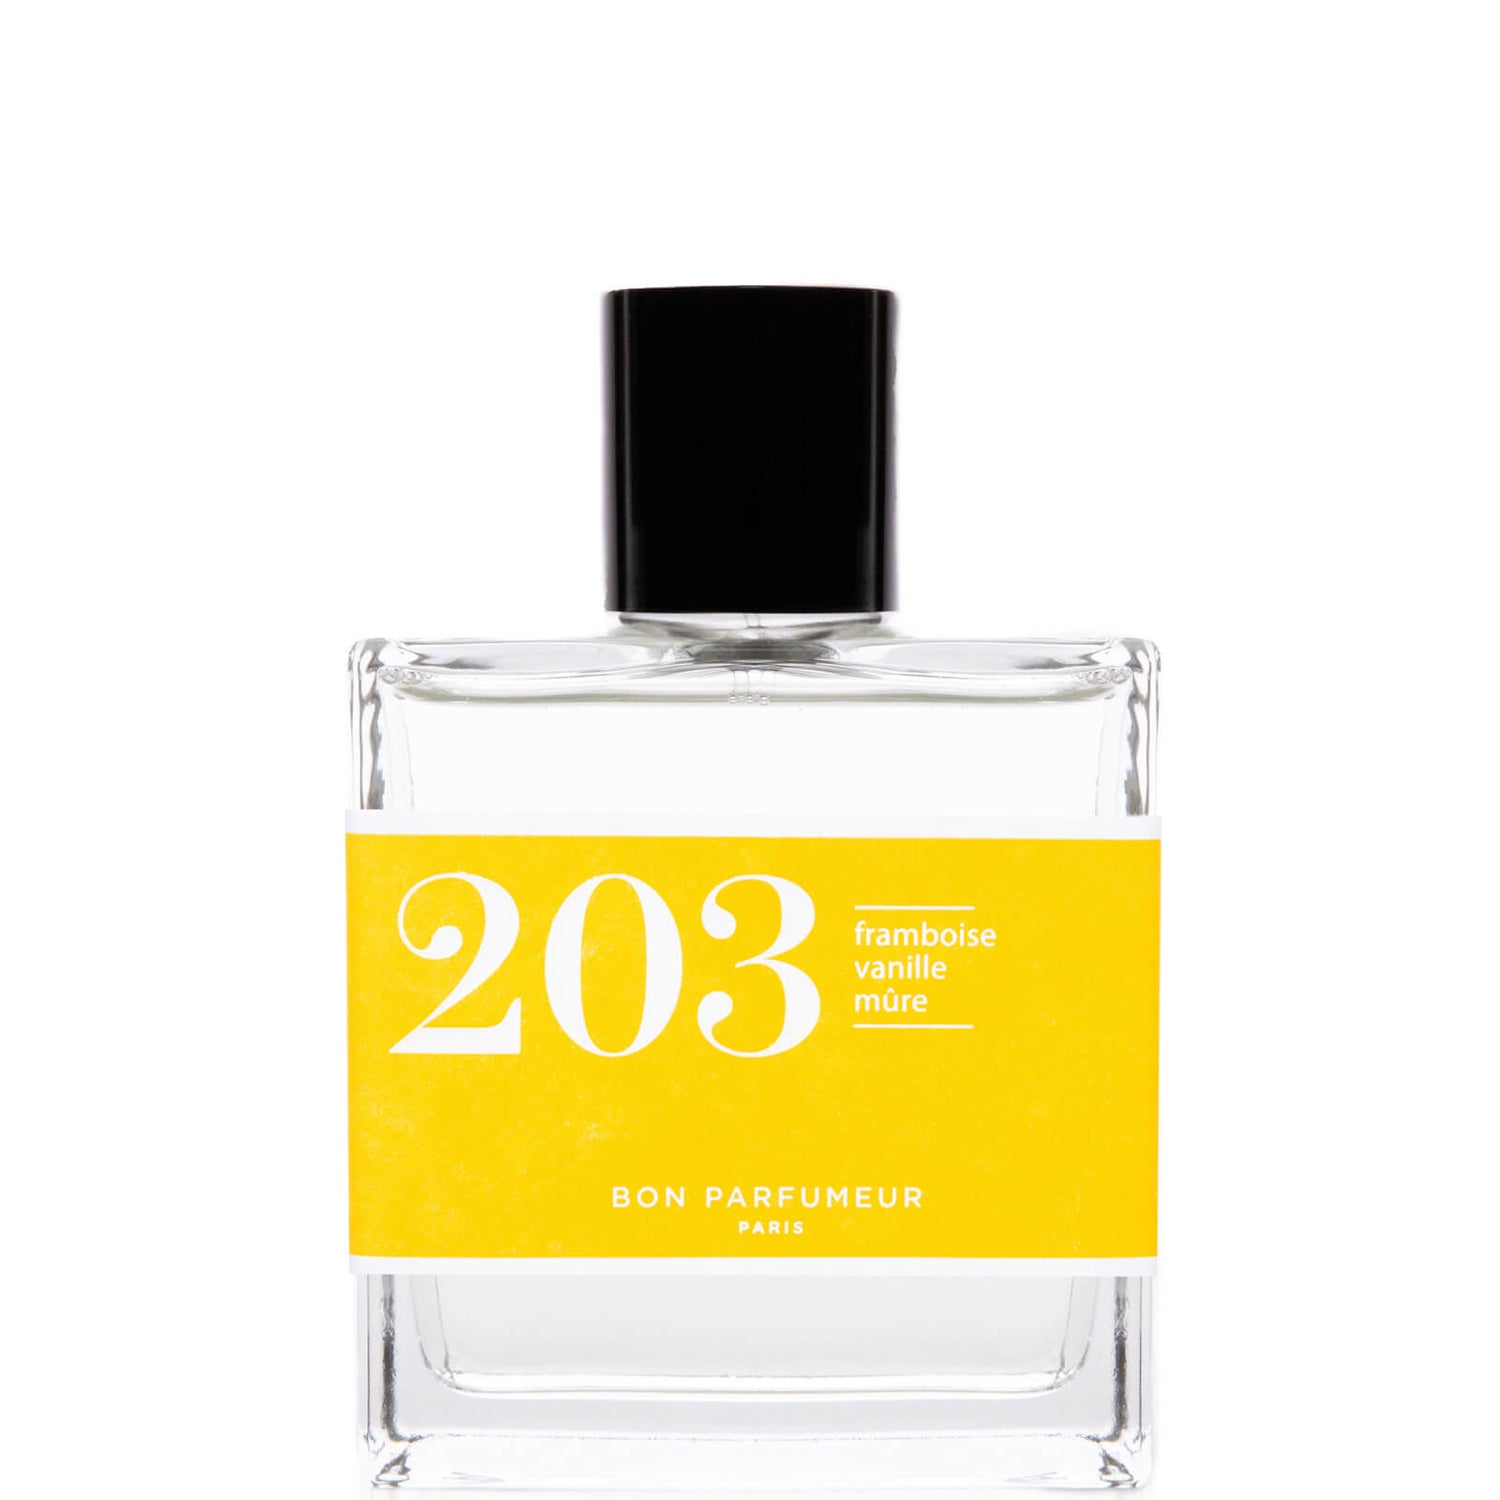 Bon Parfumeur 203 Βατόμουρο Βανίλια Βατόμουρο Eau de Parfum - 100 ml